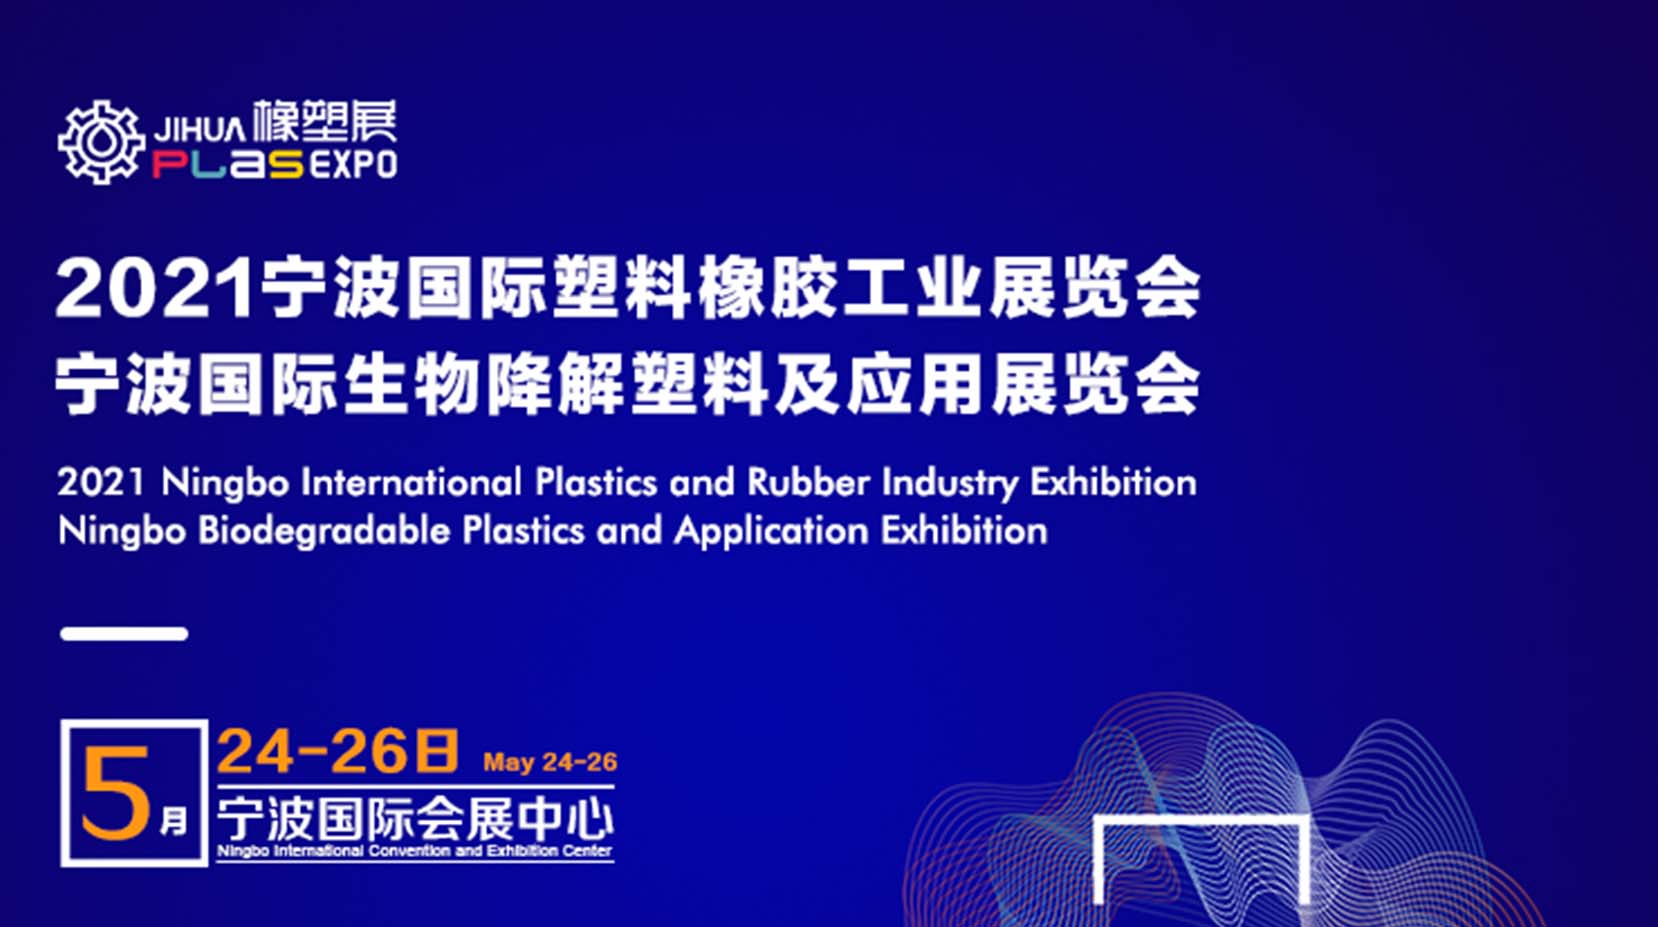 【锐捷快讯】锐捷智创亮相2021宁波国际塑料橡胶工业展览会